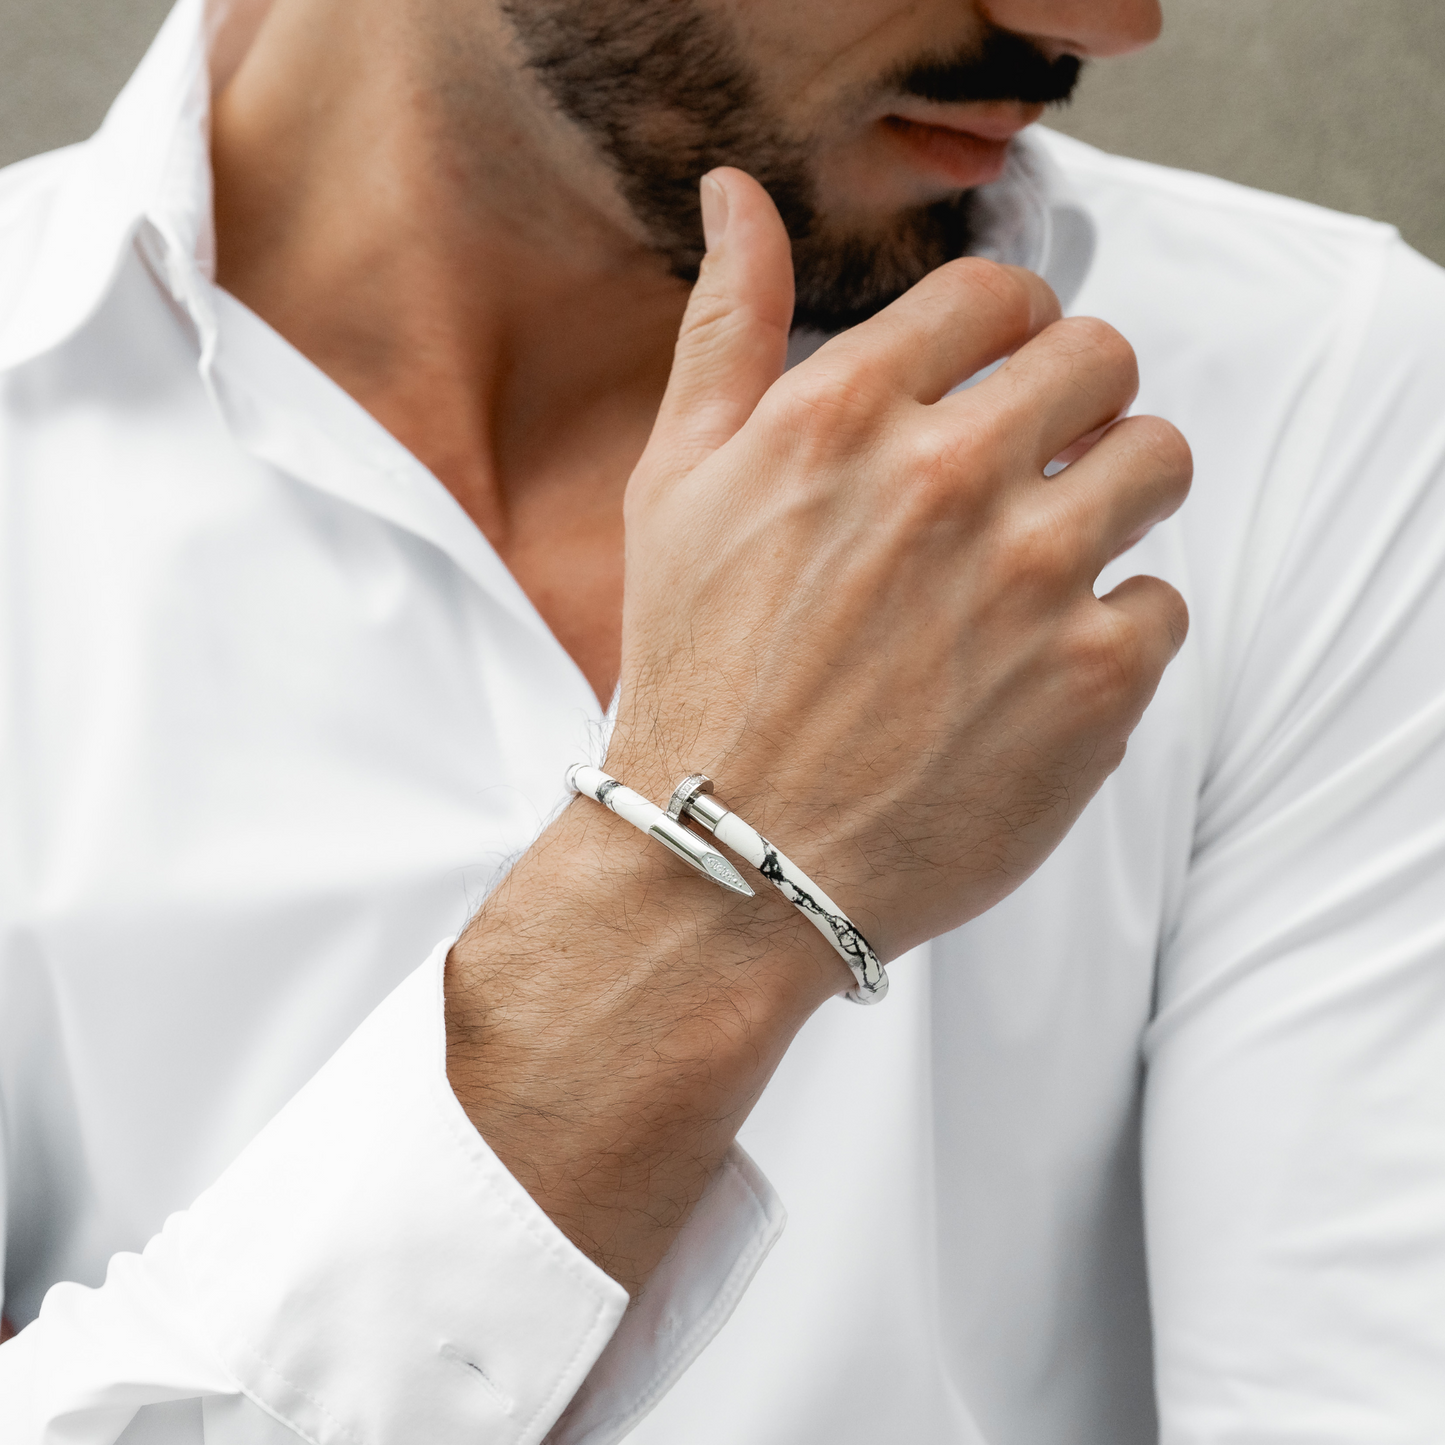 Bracelet Silver Nail with Zircon Diamond - White Leather